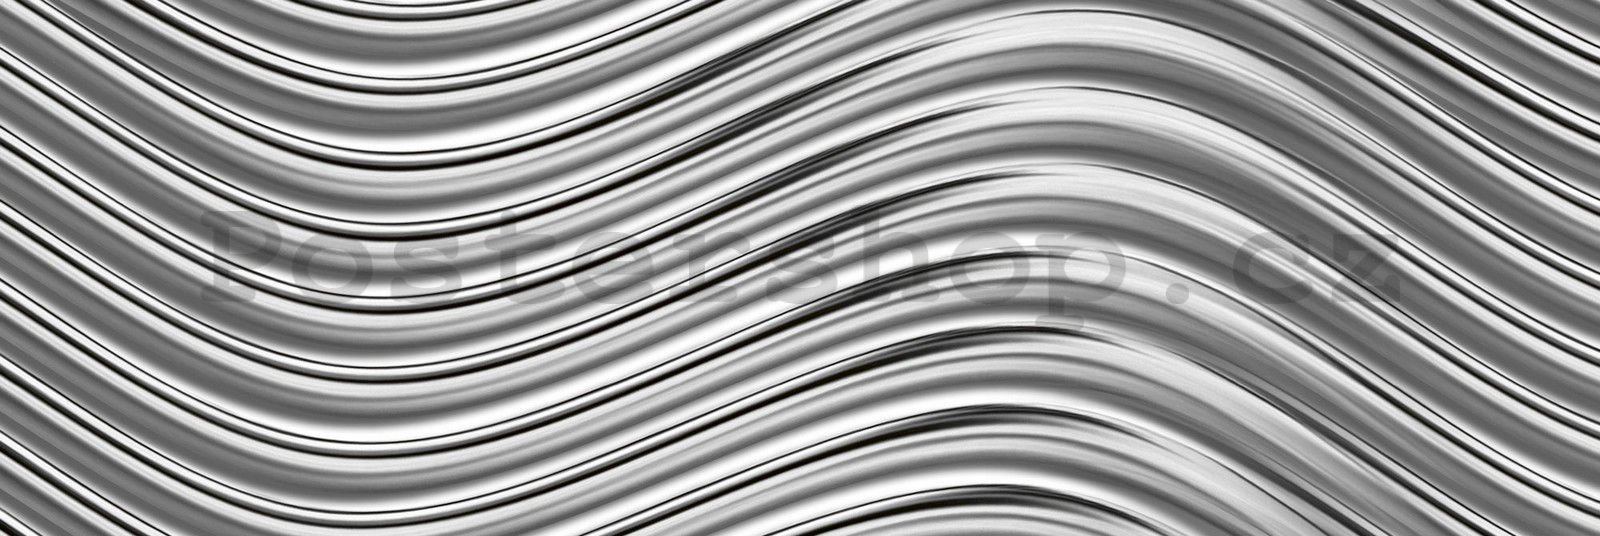 Samolepící omyvatelná tapeta za kuchyňskou linku - Stříbrné vlnky, 180x60 cm